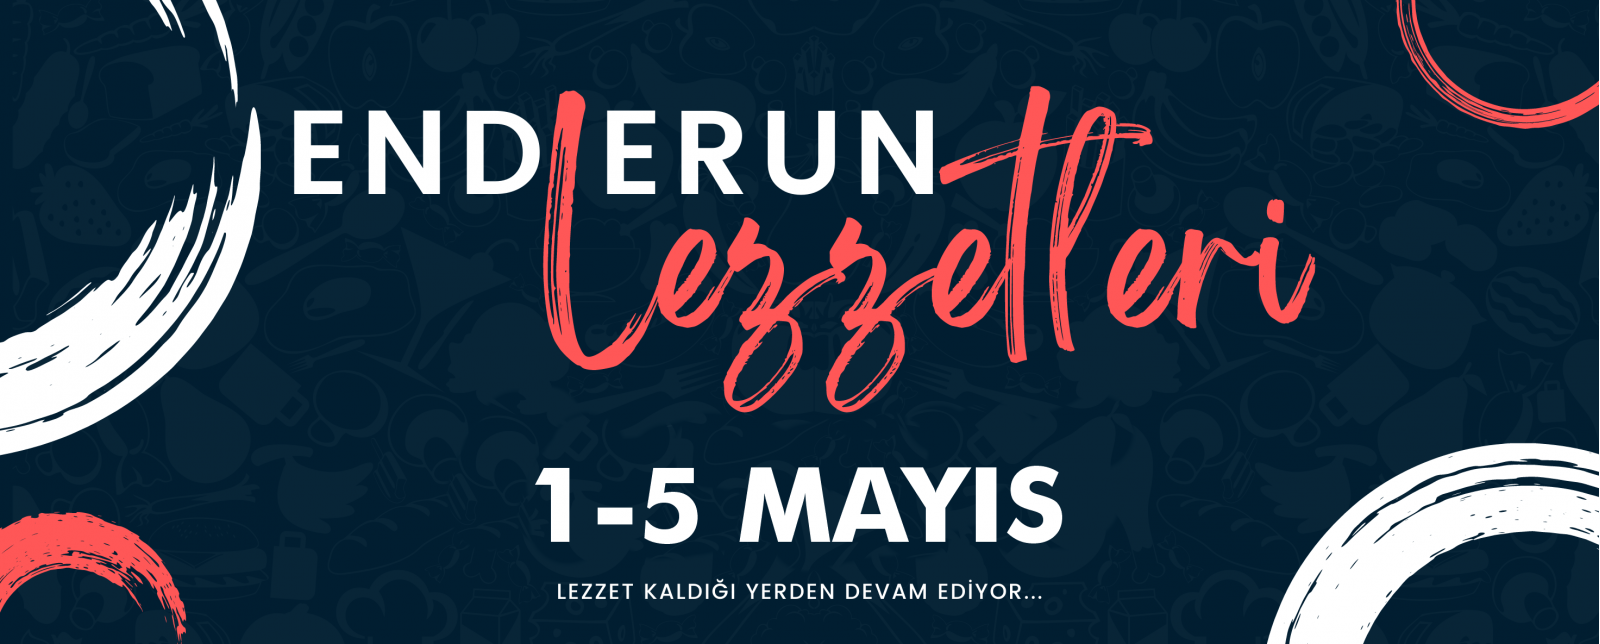 Açılış 1 Mayıs, Enderun Lezzetleri Ziyafet Soframıza Bekliyoruz!